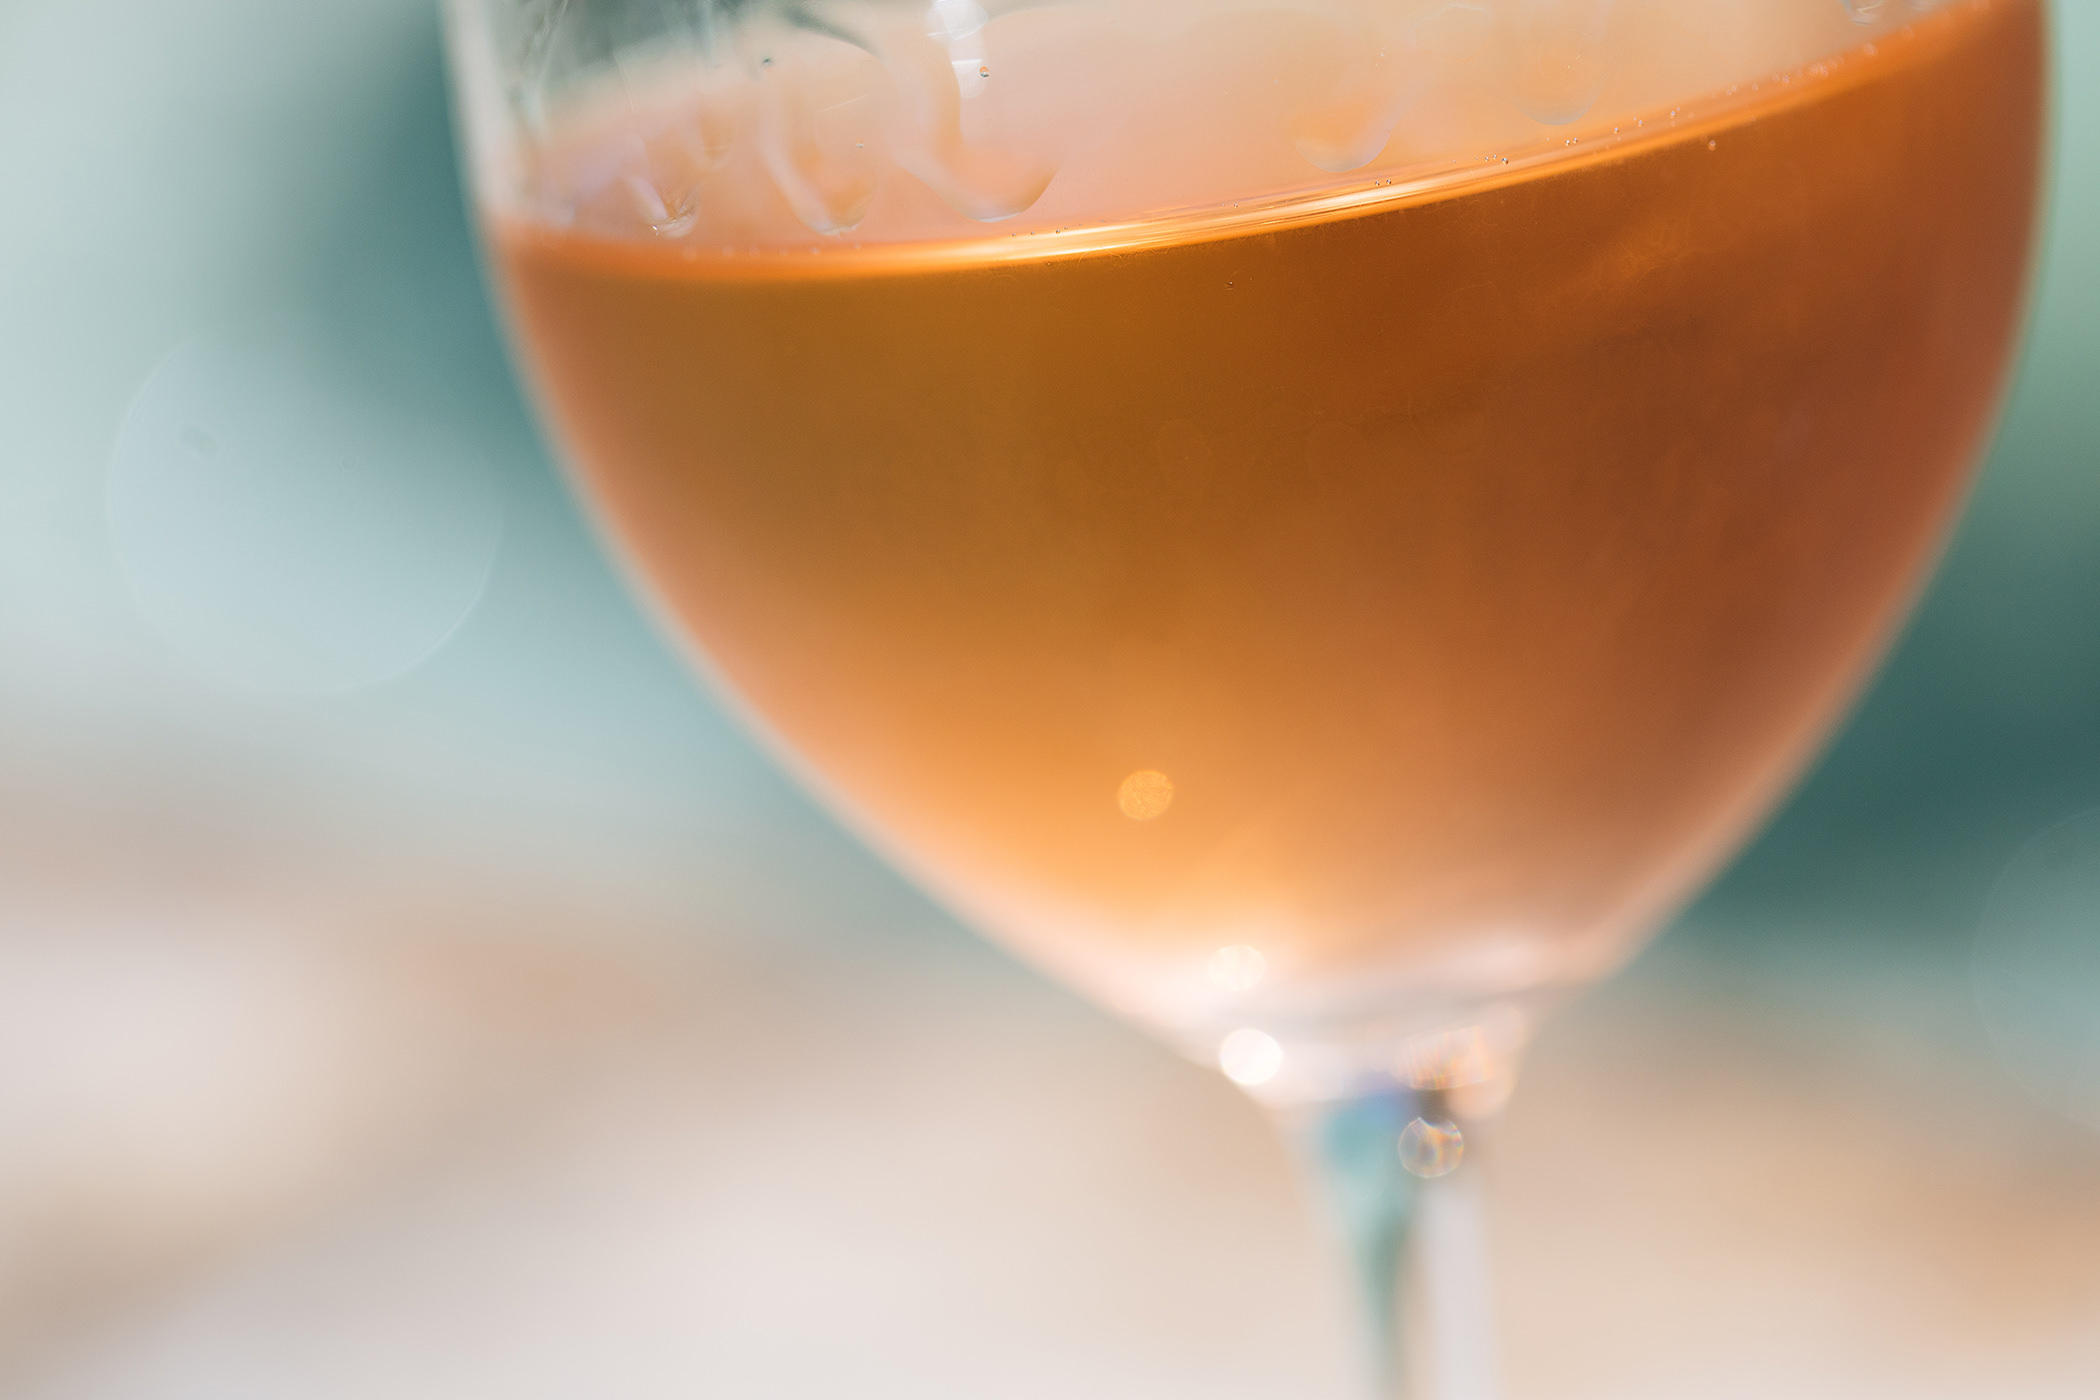 rosé wine in a glass